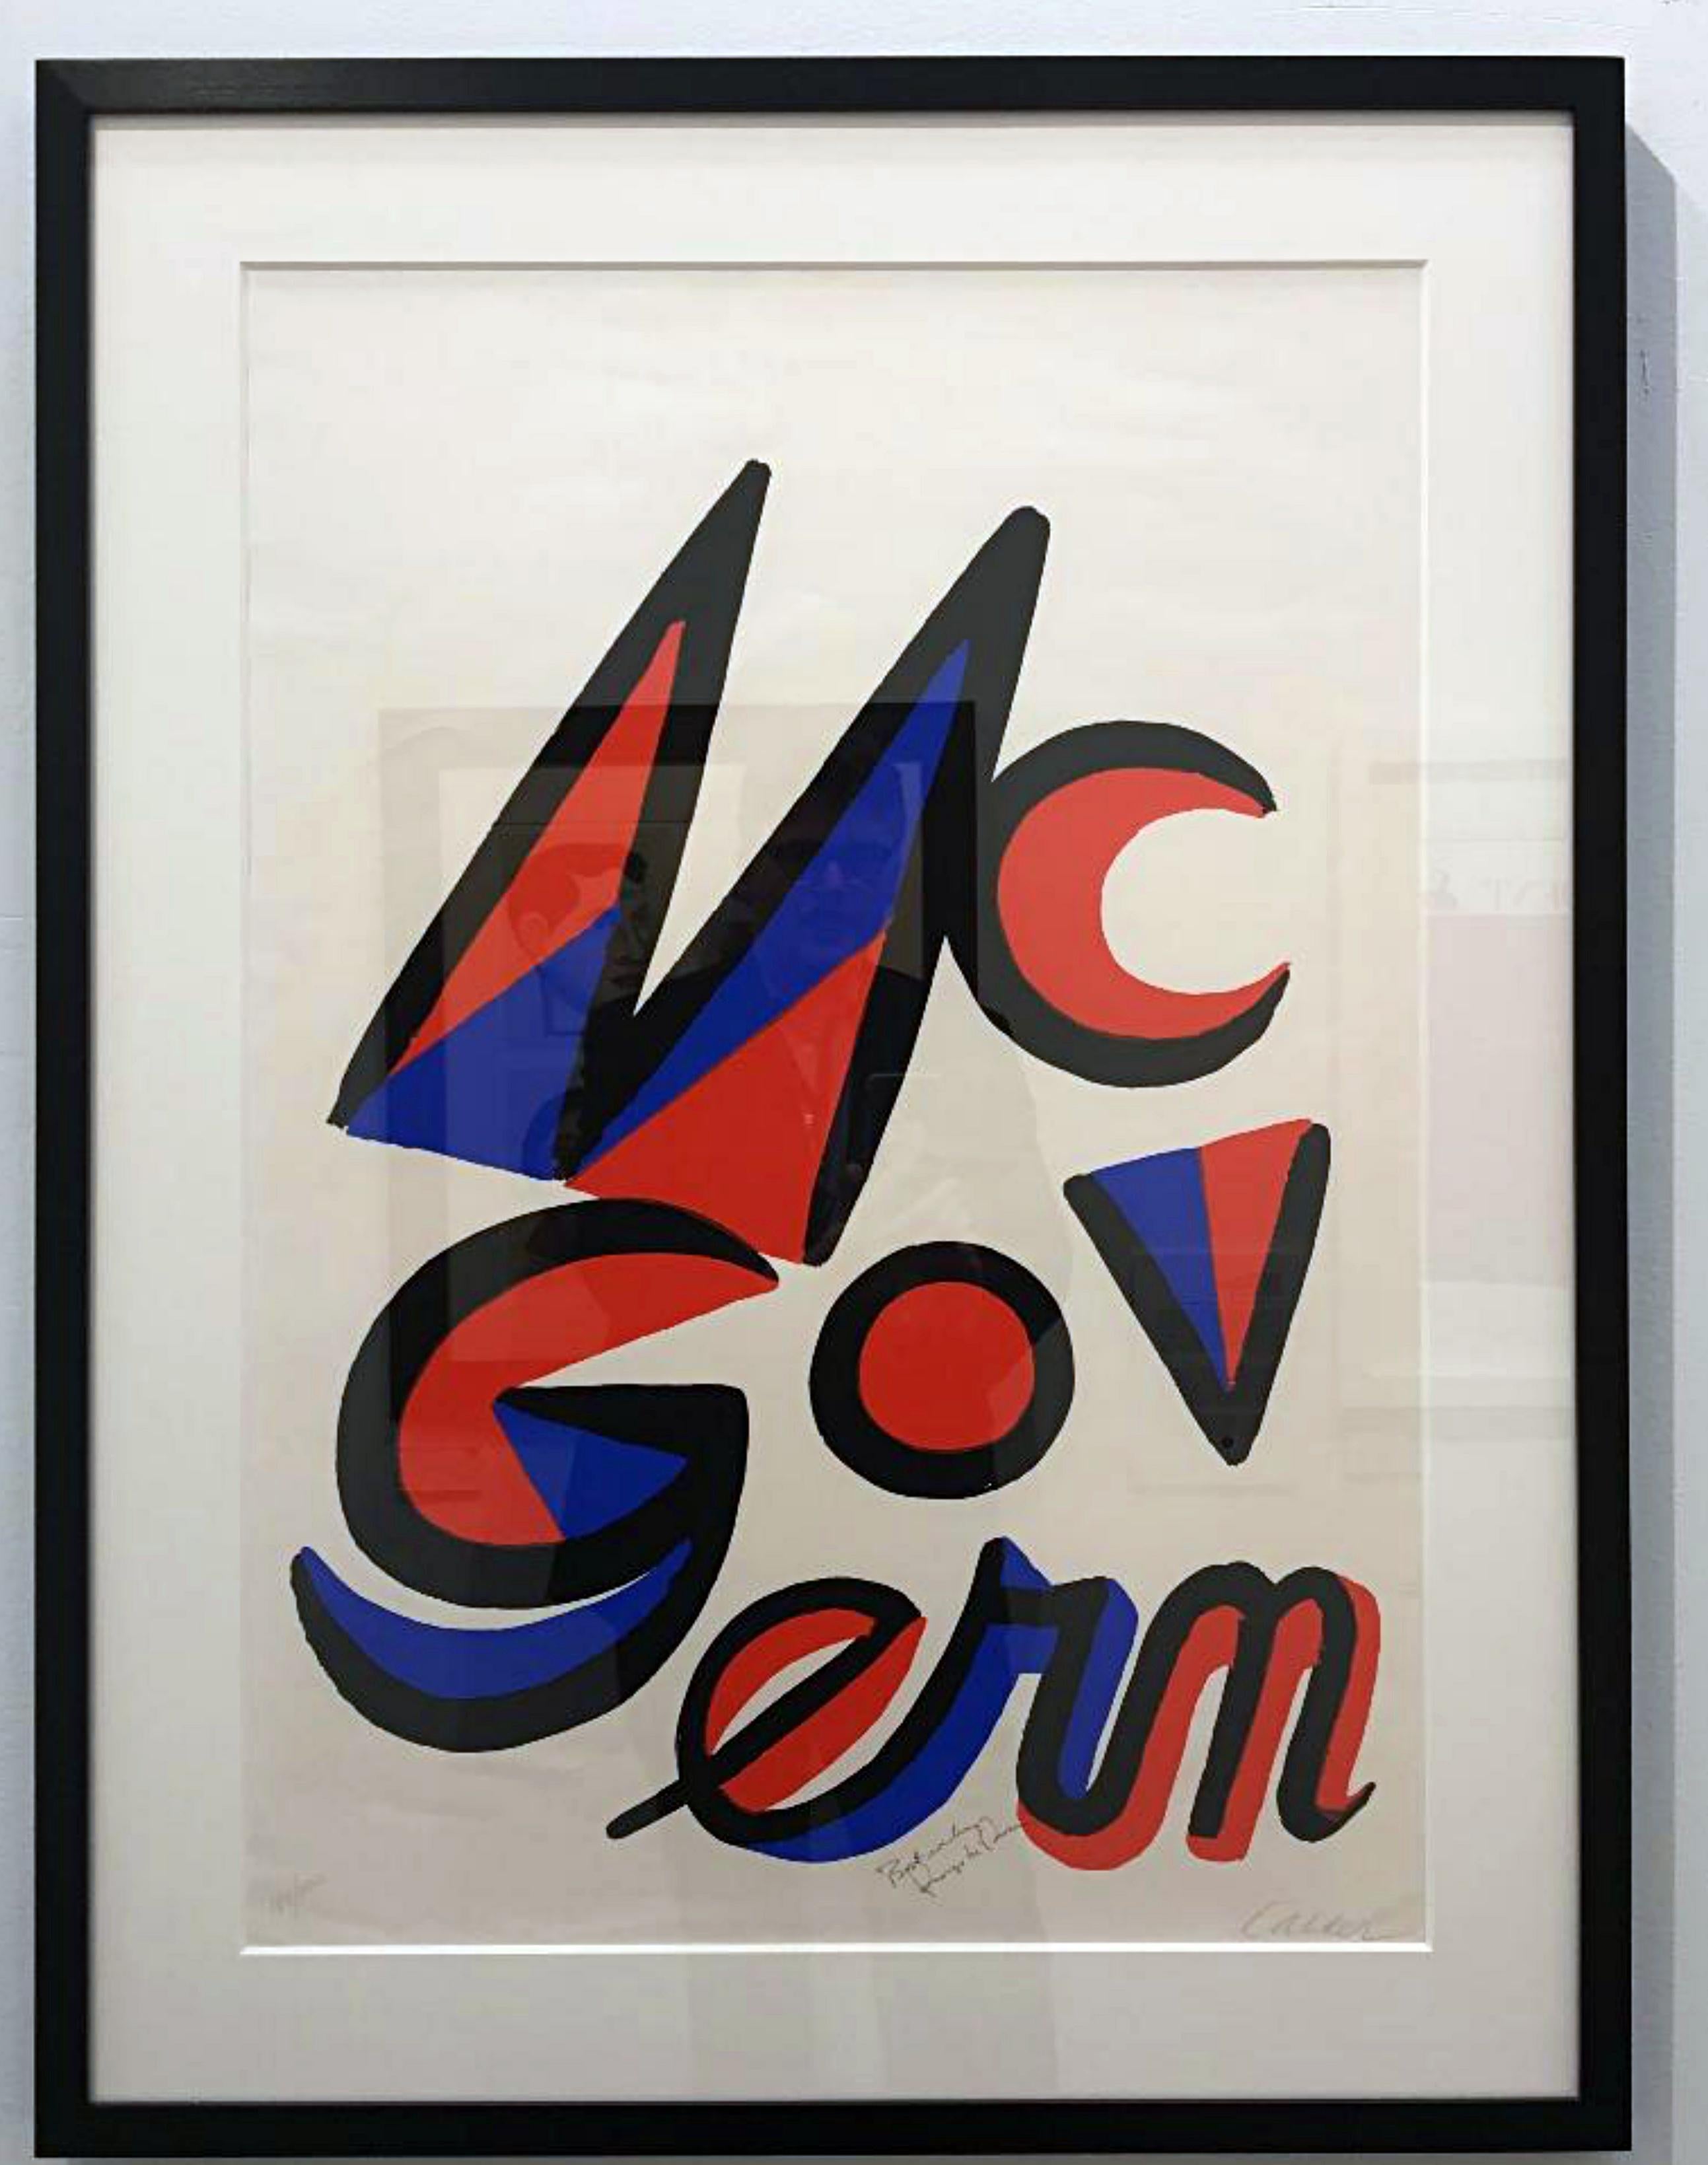 Alexander Calder
McGovern pour McGovern (signé par les DEUX Alexander Calder et George McGovern), 1972
Lithographie sur papier vélin avec des bords décolorés. Signée à la main et numérotée par Calder, avec une inscription et une signature de George